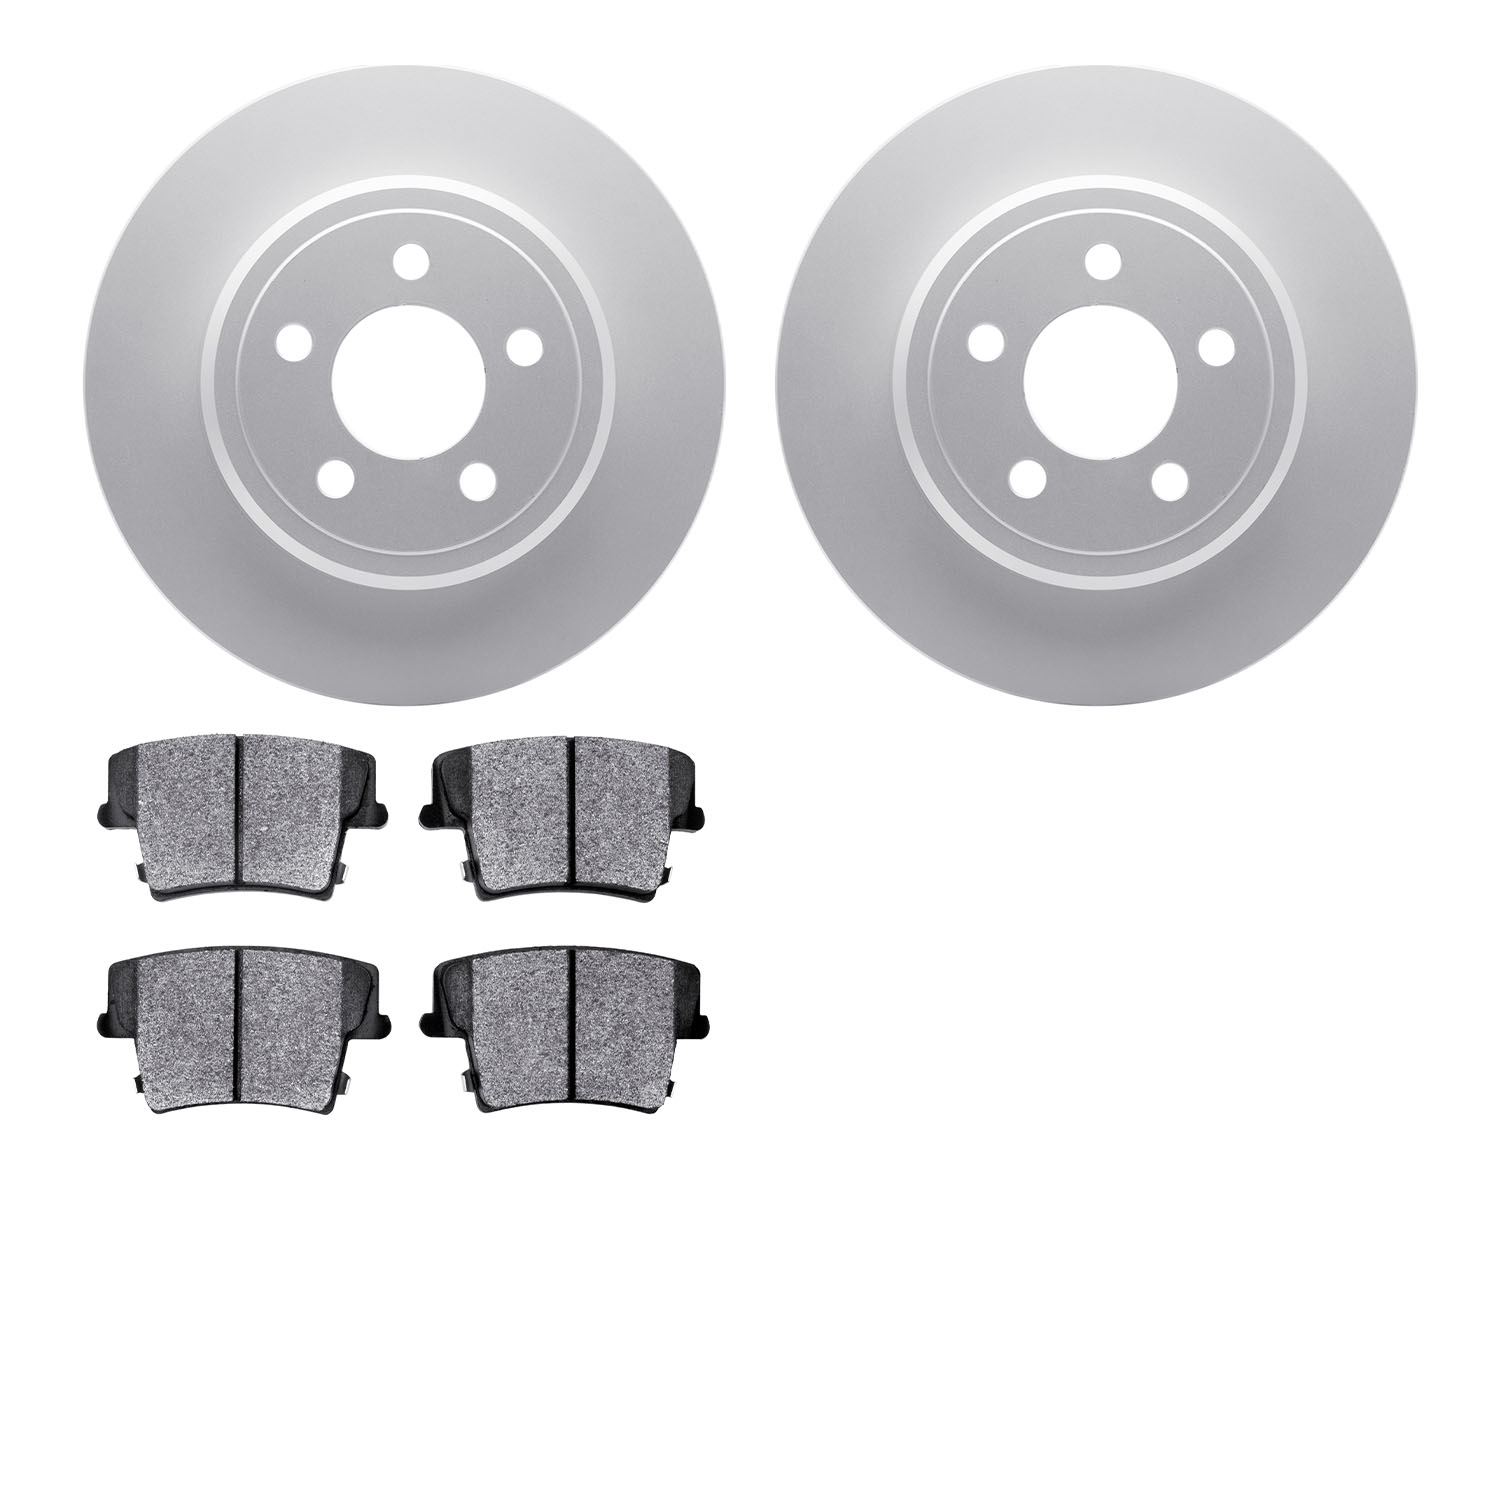 4202-39041 Geospec Brake Rotors w/Heavy-Duty Brake Pads Kit, Fits Select Mopar, Position: Rear